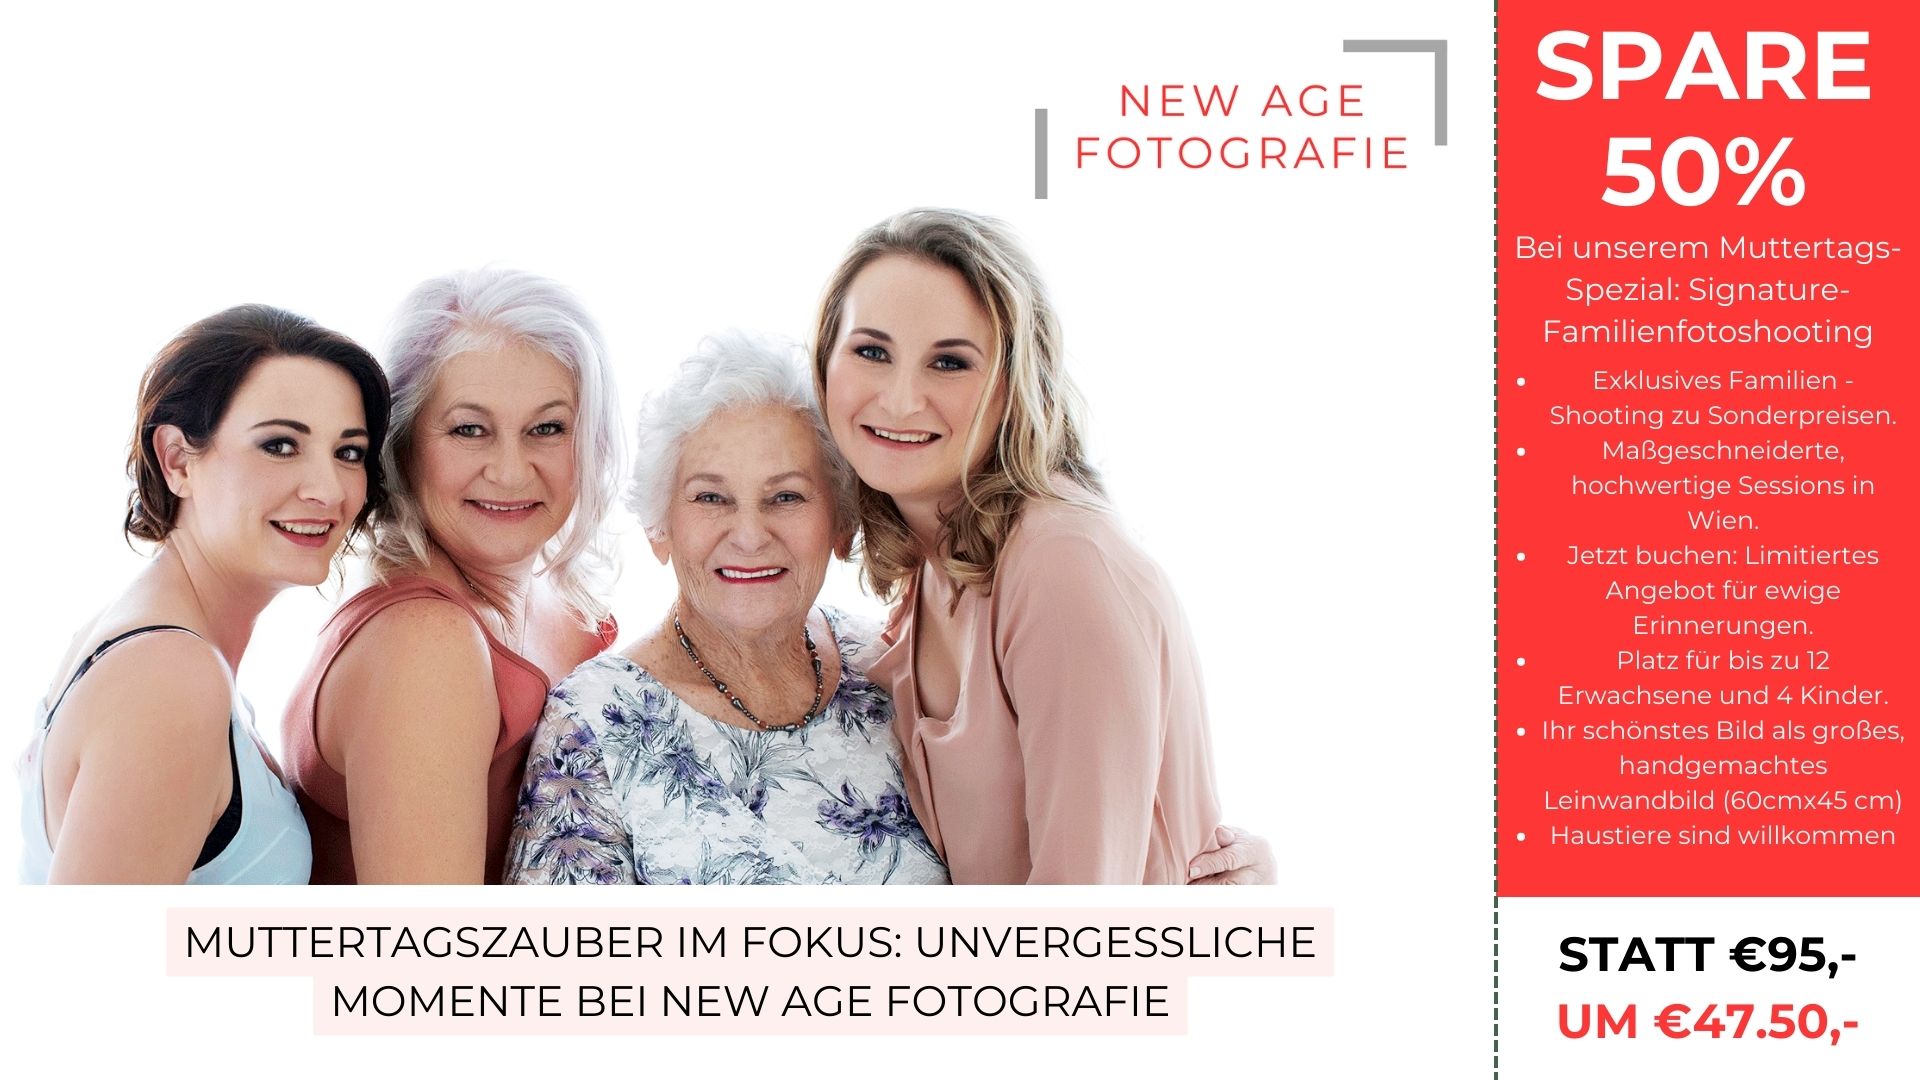 Werbung für ein Muttertags-Familienfotoshooting mit vier lächelnden Frauen und Rabattangebot